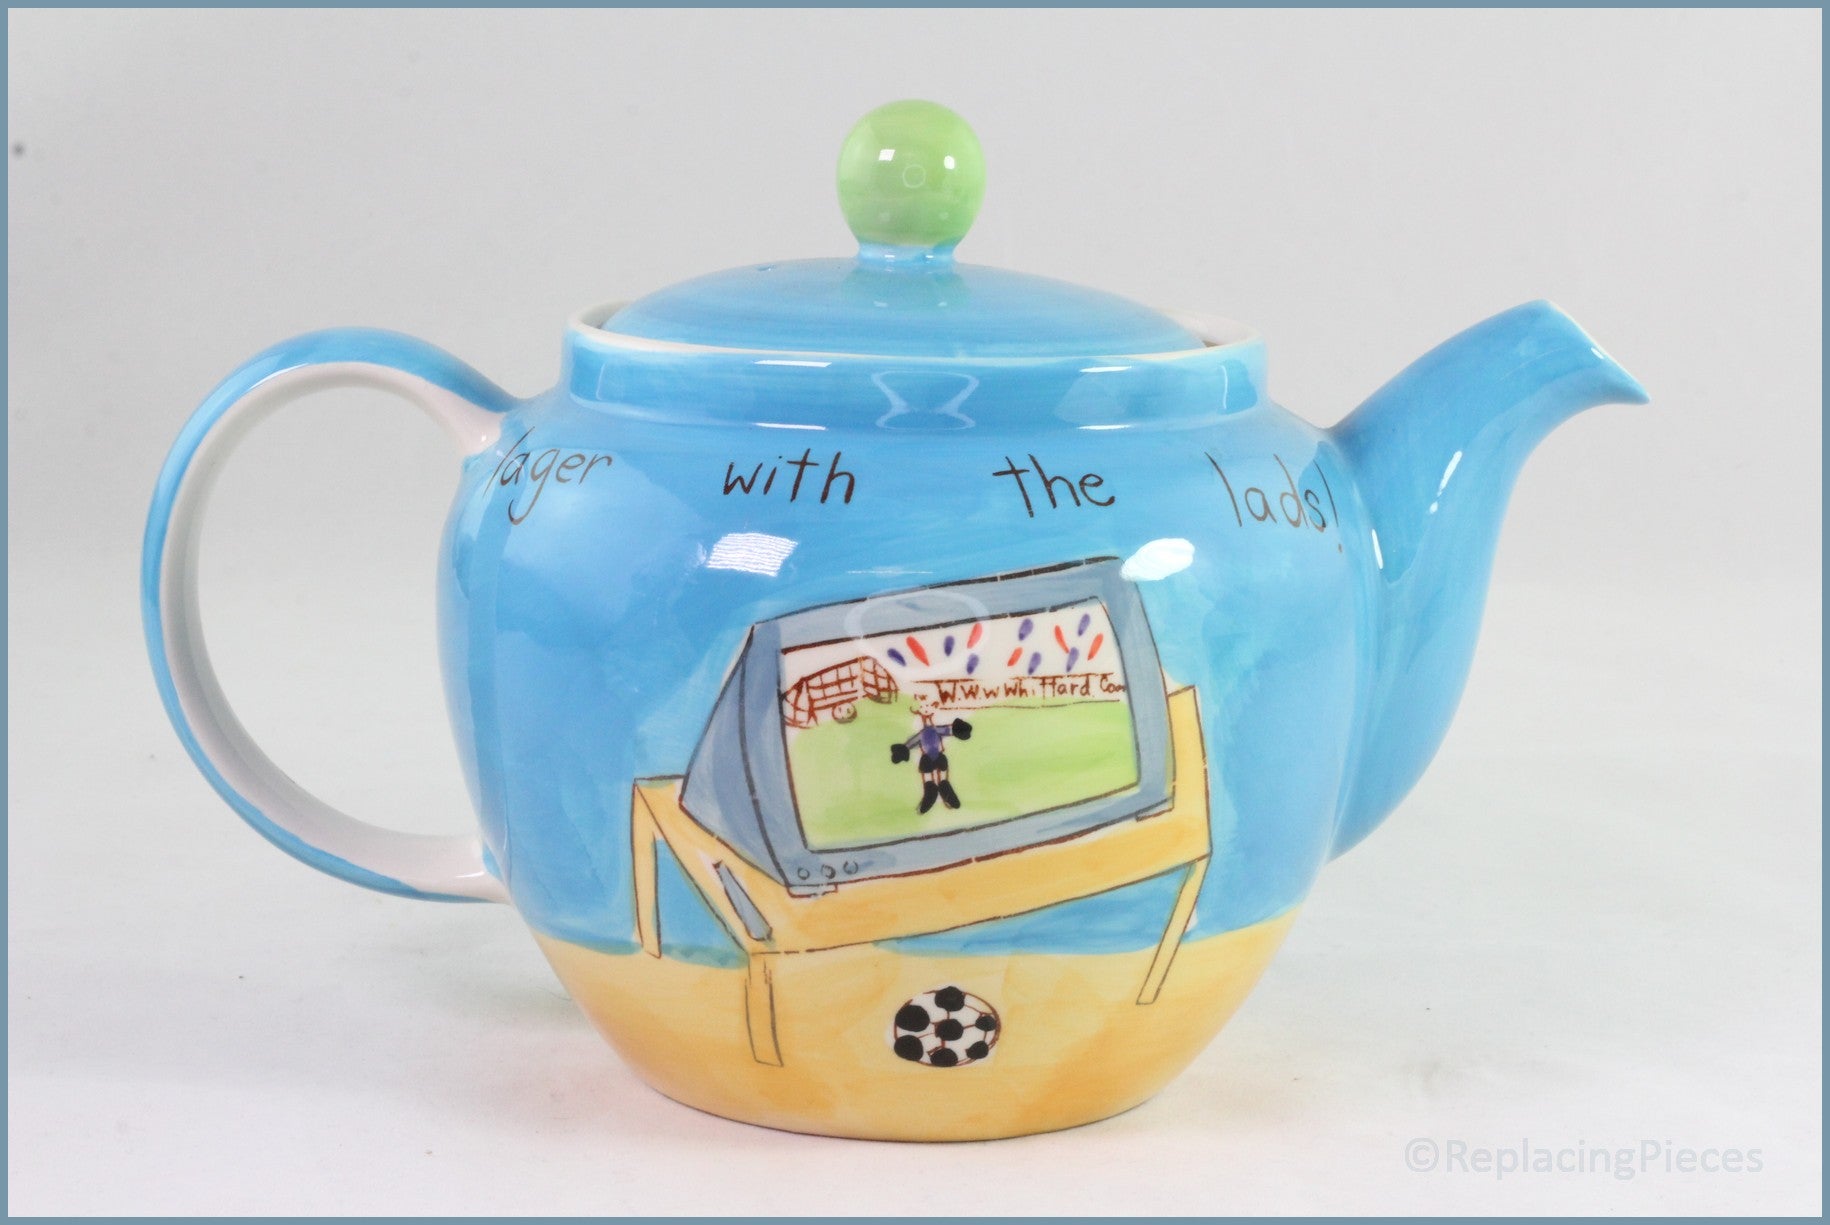 RPW140 - Whittards - Teapot - Footie Finals (No Strainer)